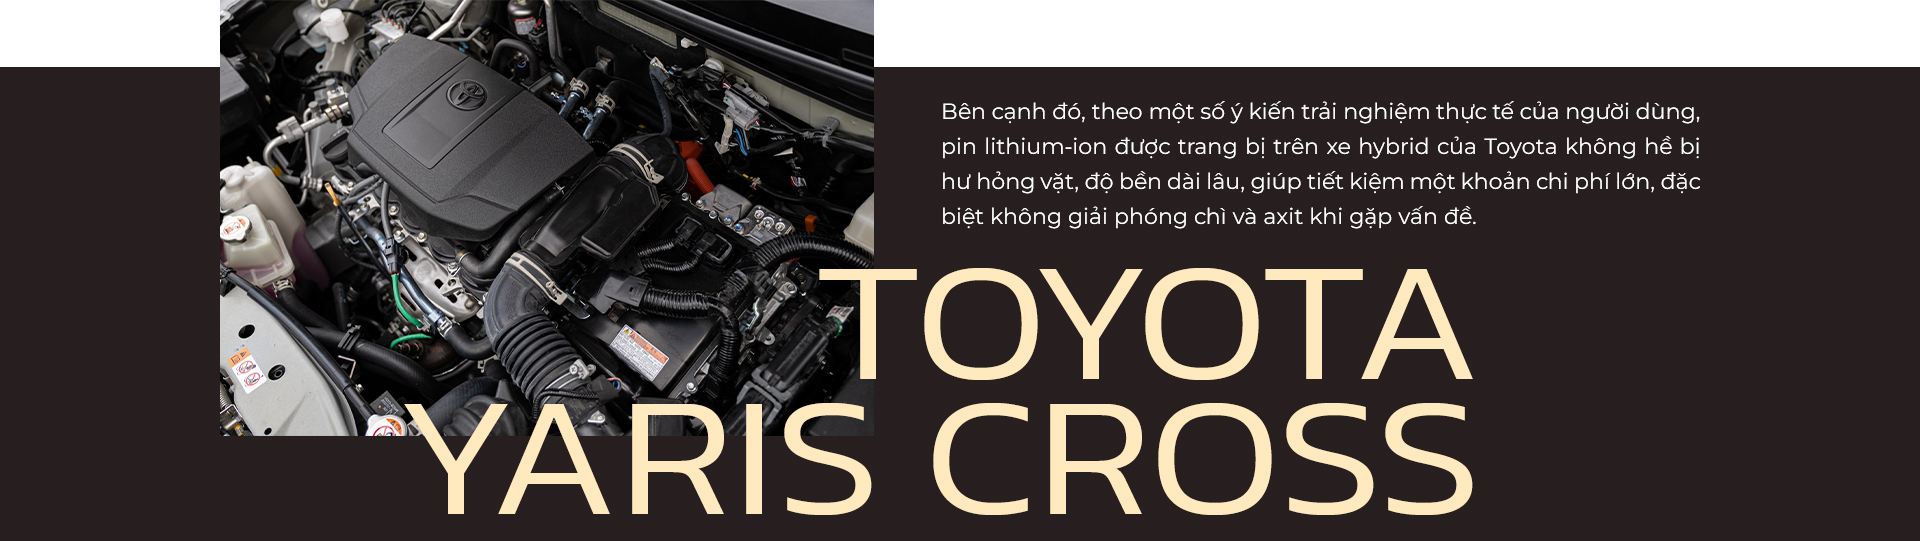 Toyota Yaris Cross: B-SUV ‘chuẩn chỉnh’ cho người trẻ thành đạt - Ảnh 7.